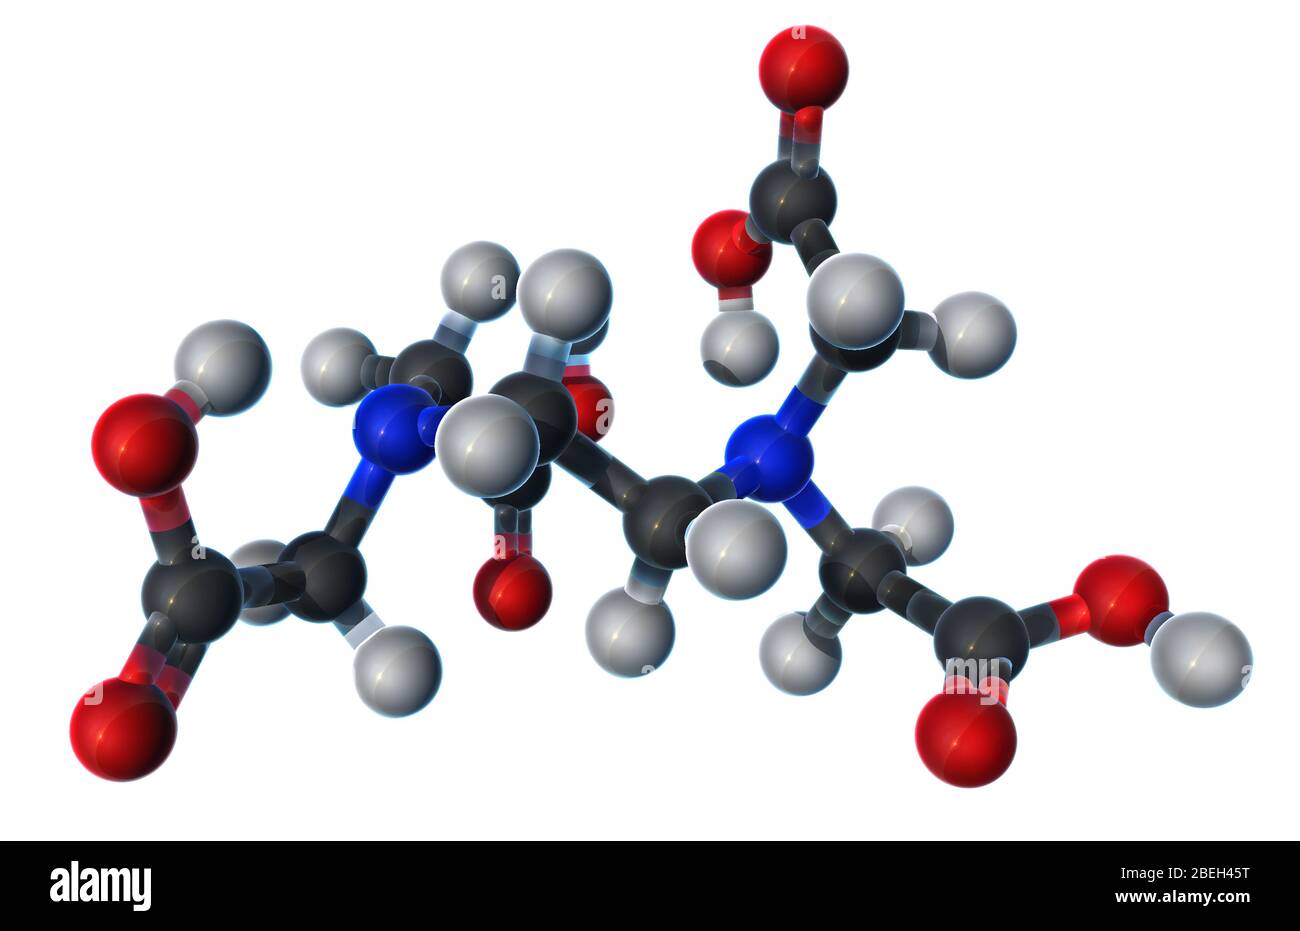 Modello molecolare dell'acido etilendiamminotetraacetico (EDTA), solido incolore e solubile in acqua utilizzato nella terapia chelante per il trattamento dell'avvelenamento da mercurio e piombo. L'EDTA è stato anche utilizzato come antiossidante e conservante alimentare, e può anche essere trovato in prodotti per la cura personale e prodotti più puliti. Gli atomi sono colorati in grigio scuro (carbonio), grigio chiaro (idrogeno), rosso (ossigeno) e blu (azoto). Foto Stock